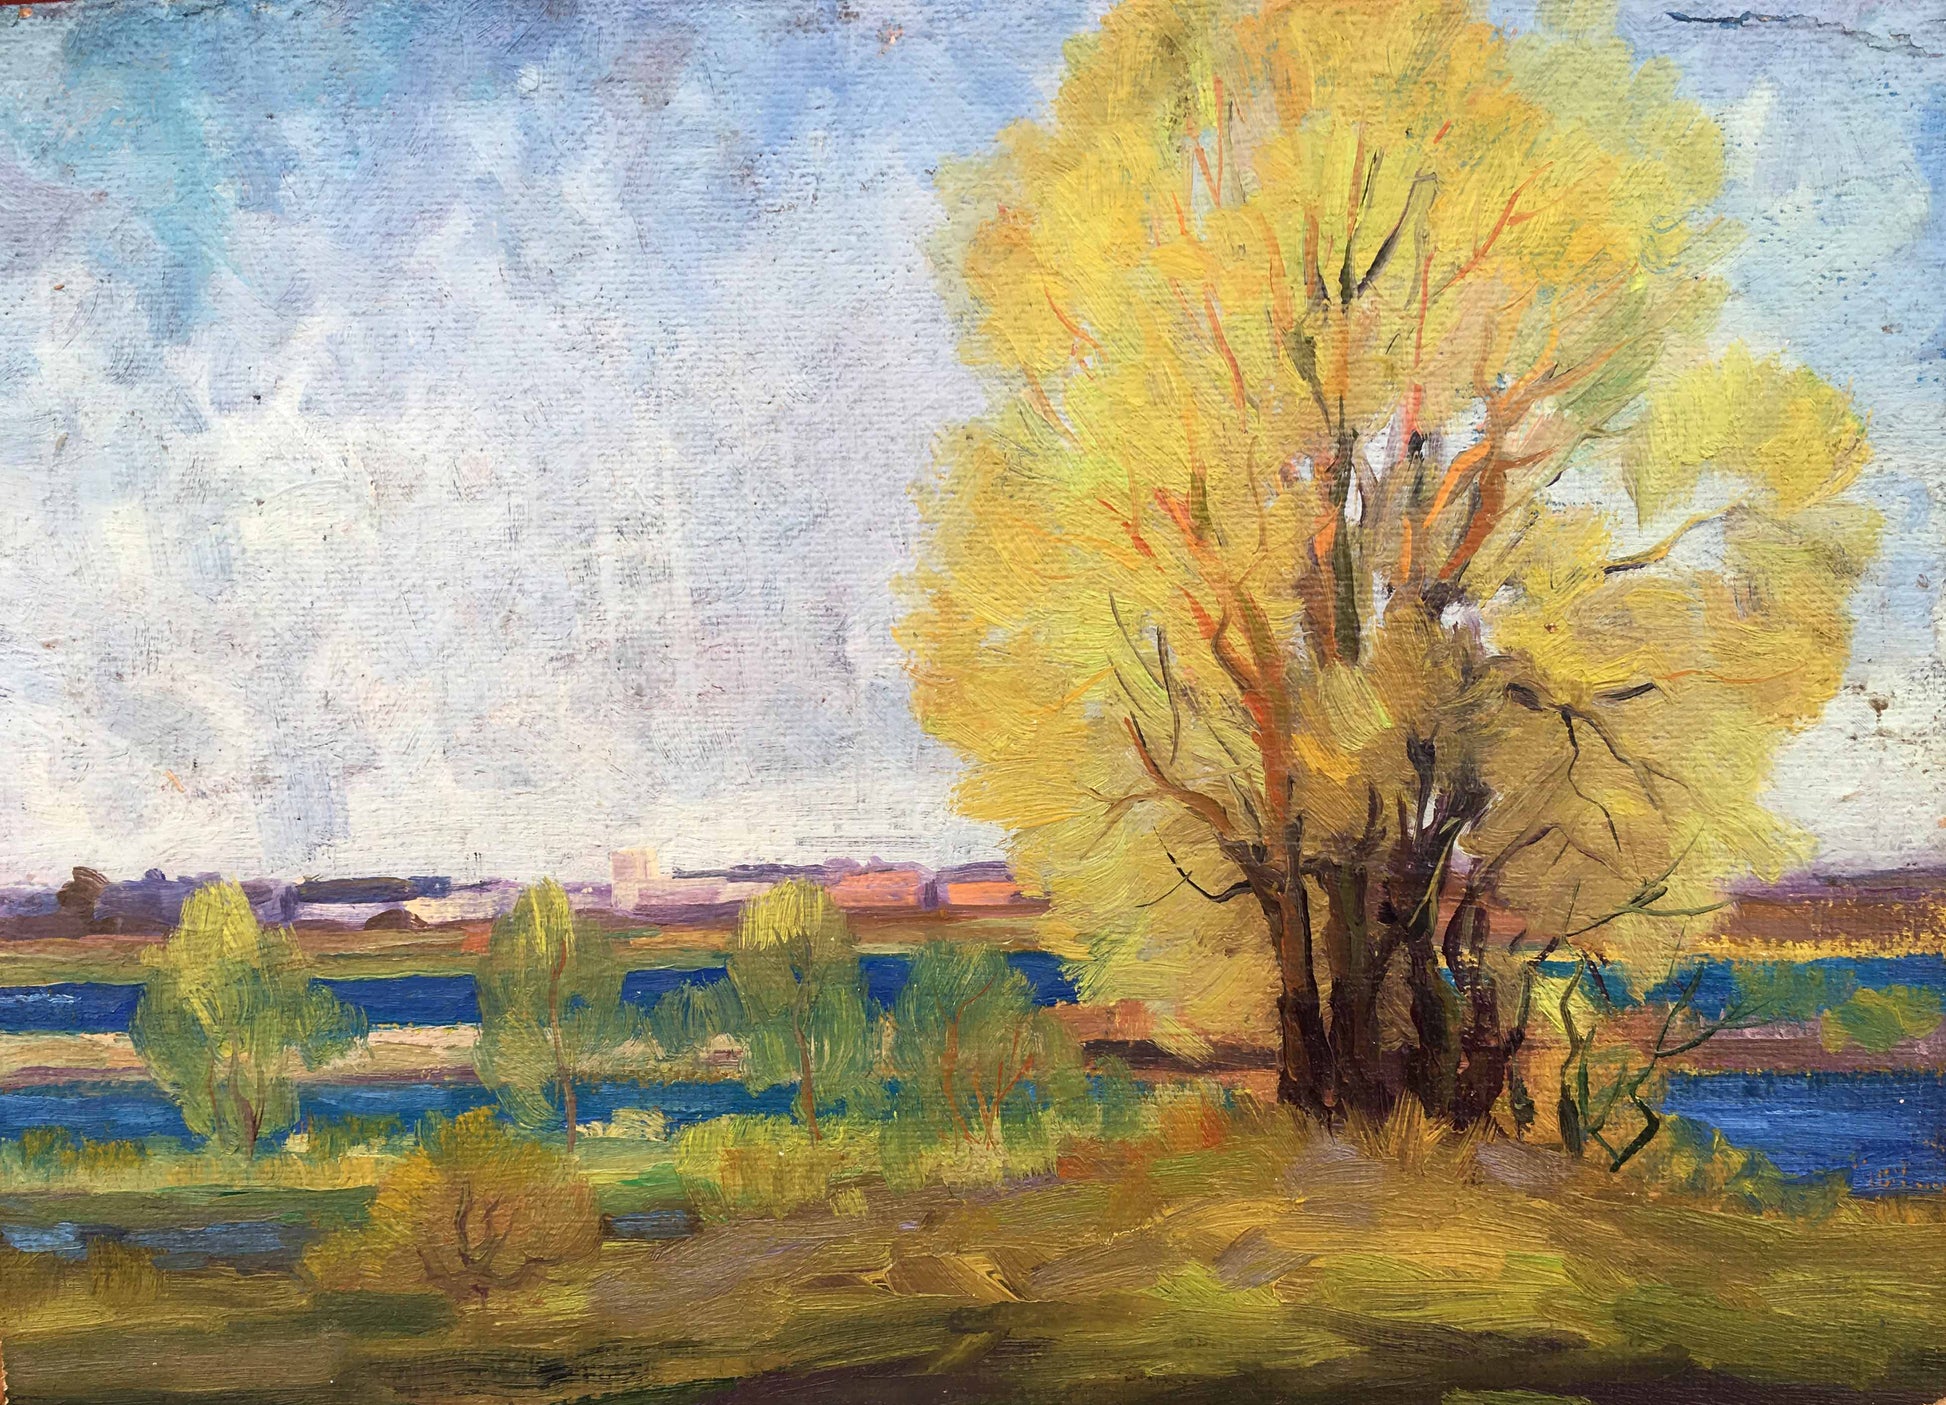 Oil painting of an autumn scene